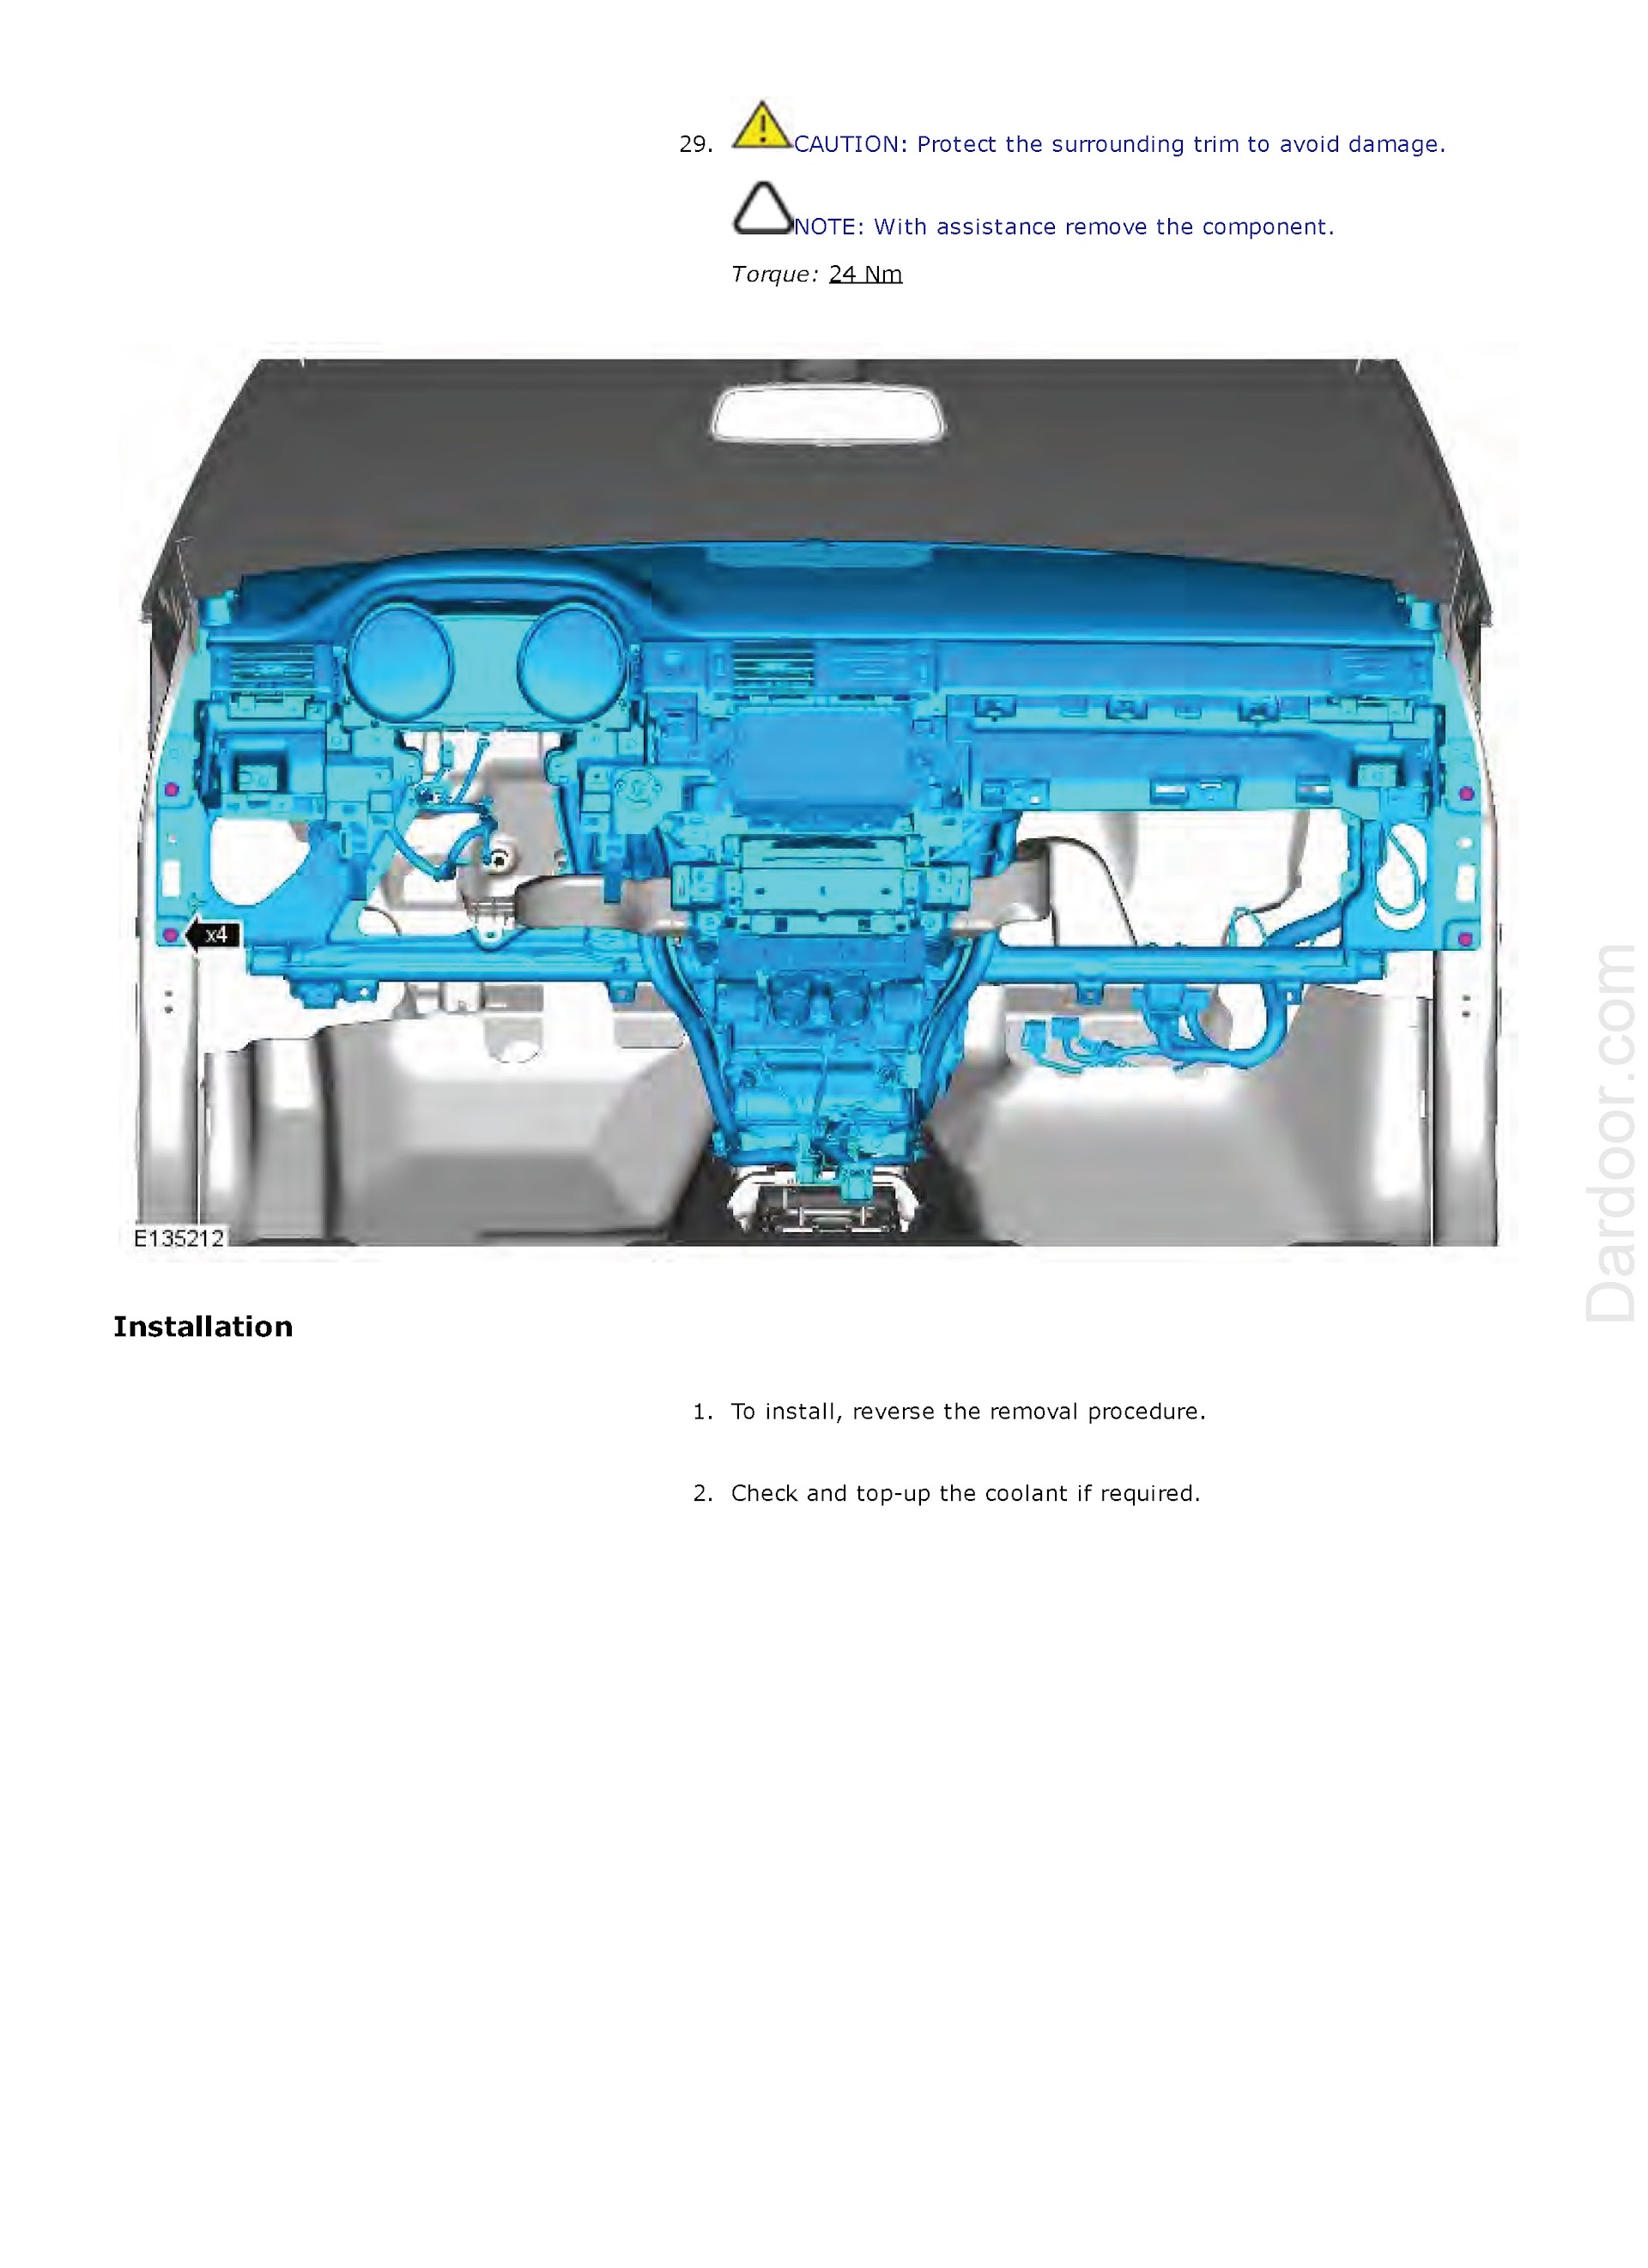 2013 Range Rover Evoque Repair Manual, Instrument Panel